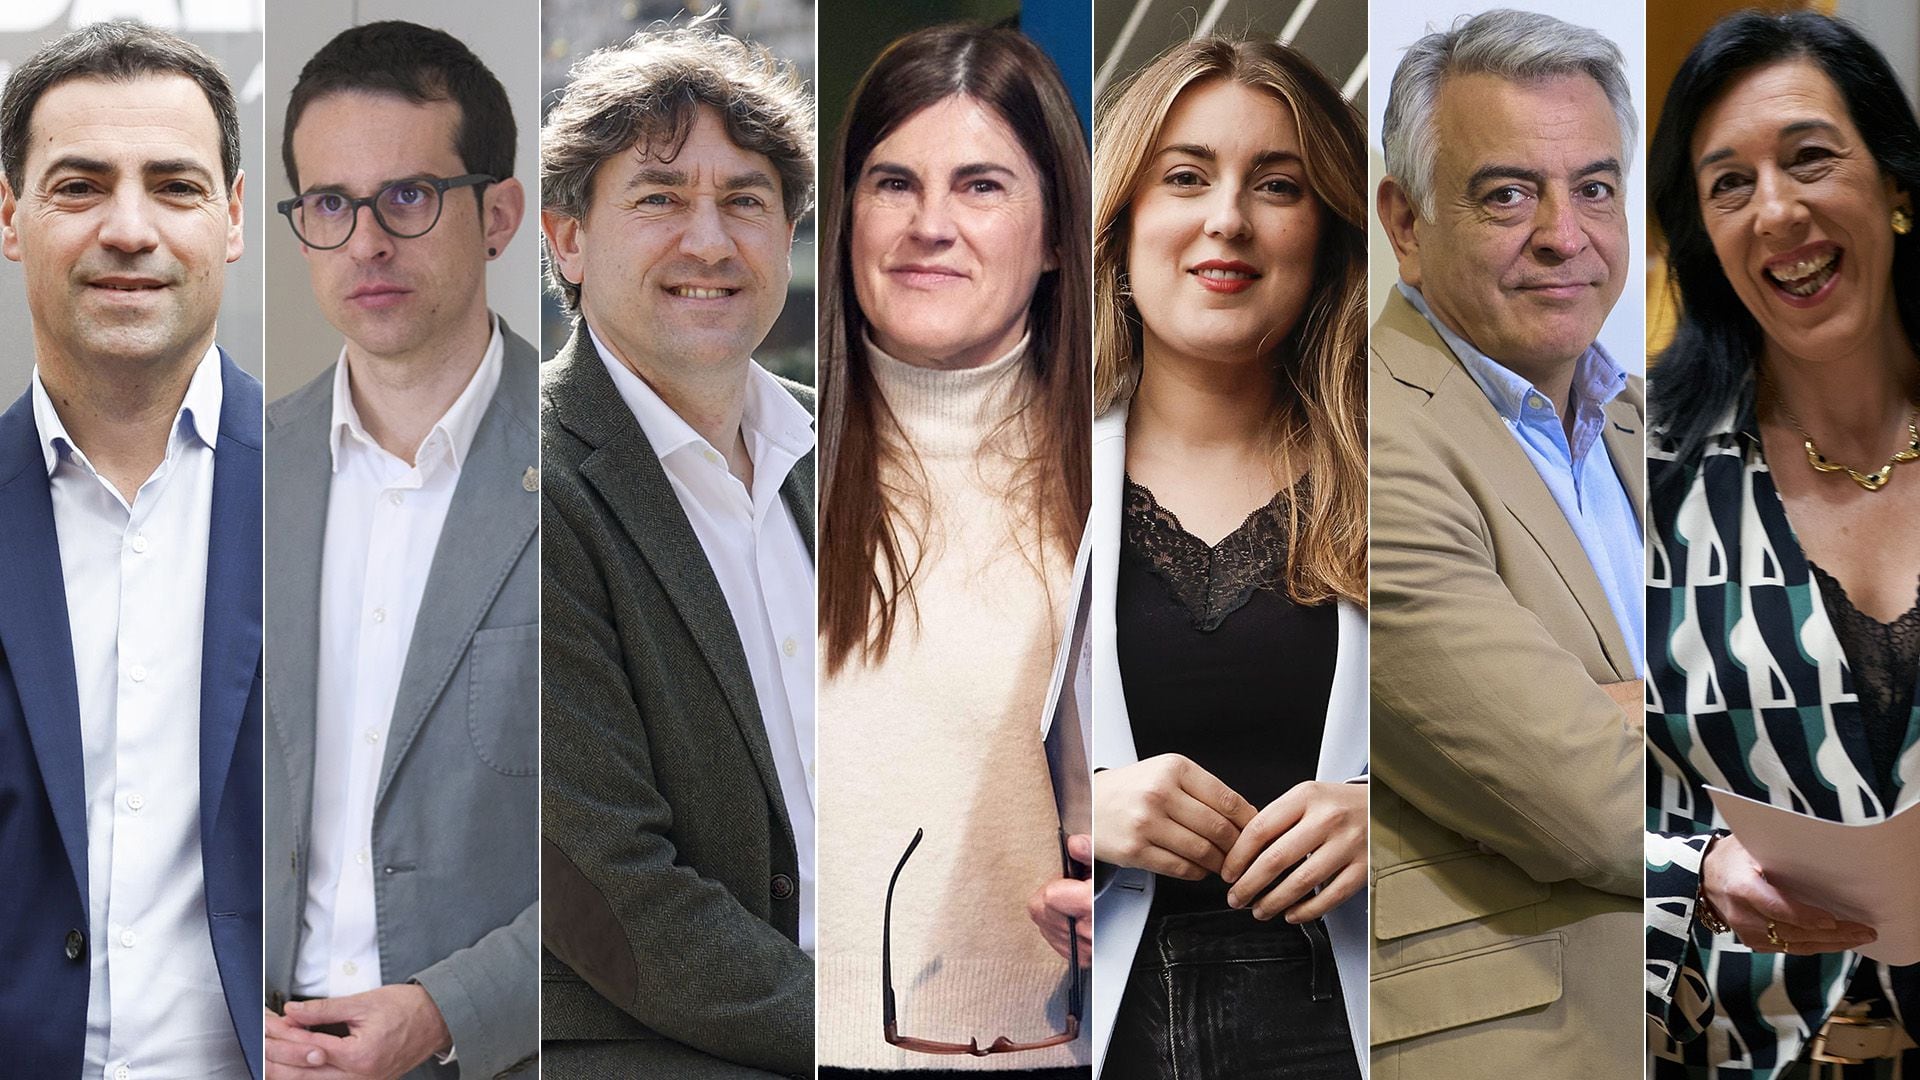 Estos son los candidatos a las elecciones vascas del 21 de abril